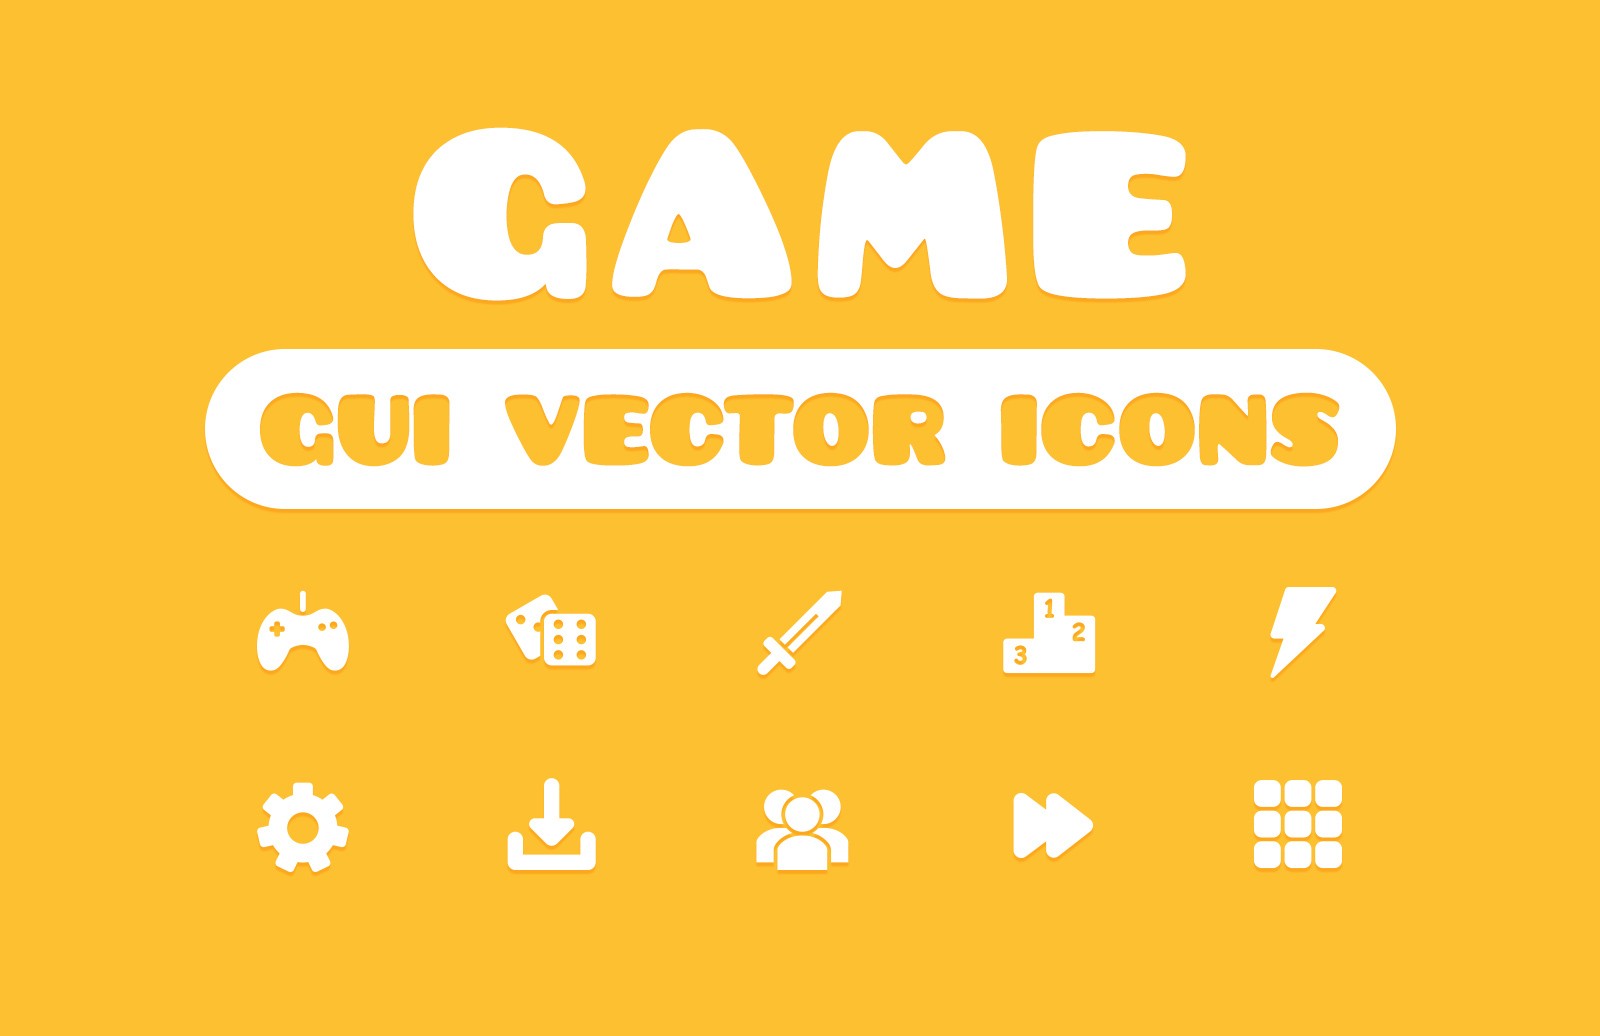 游戏主题界面矢量图标集合 Game GUI Vector Icons插图